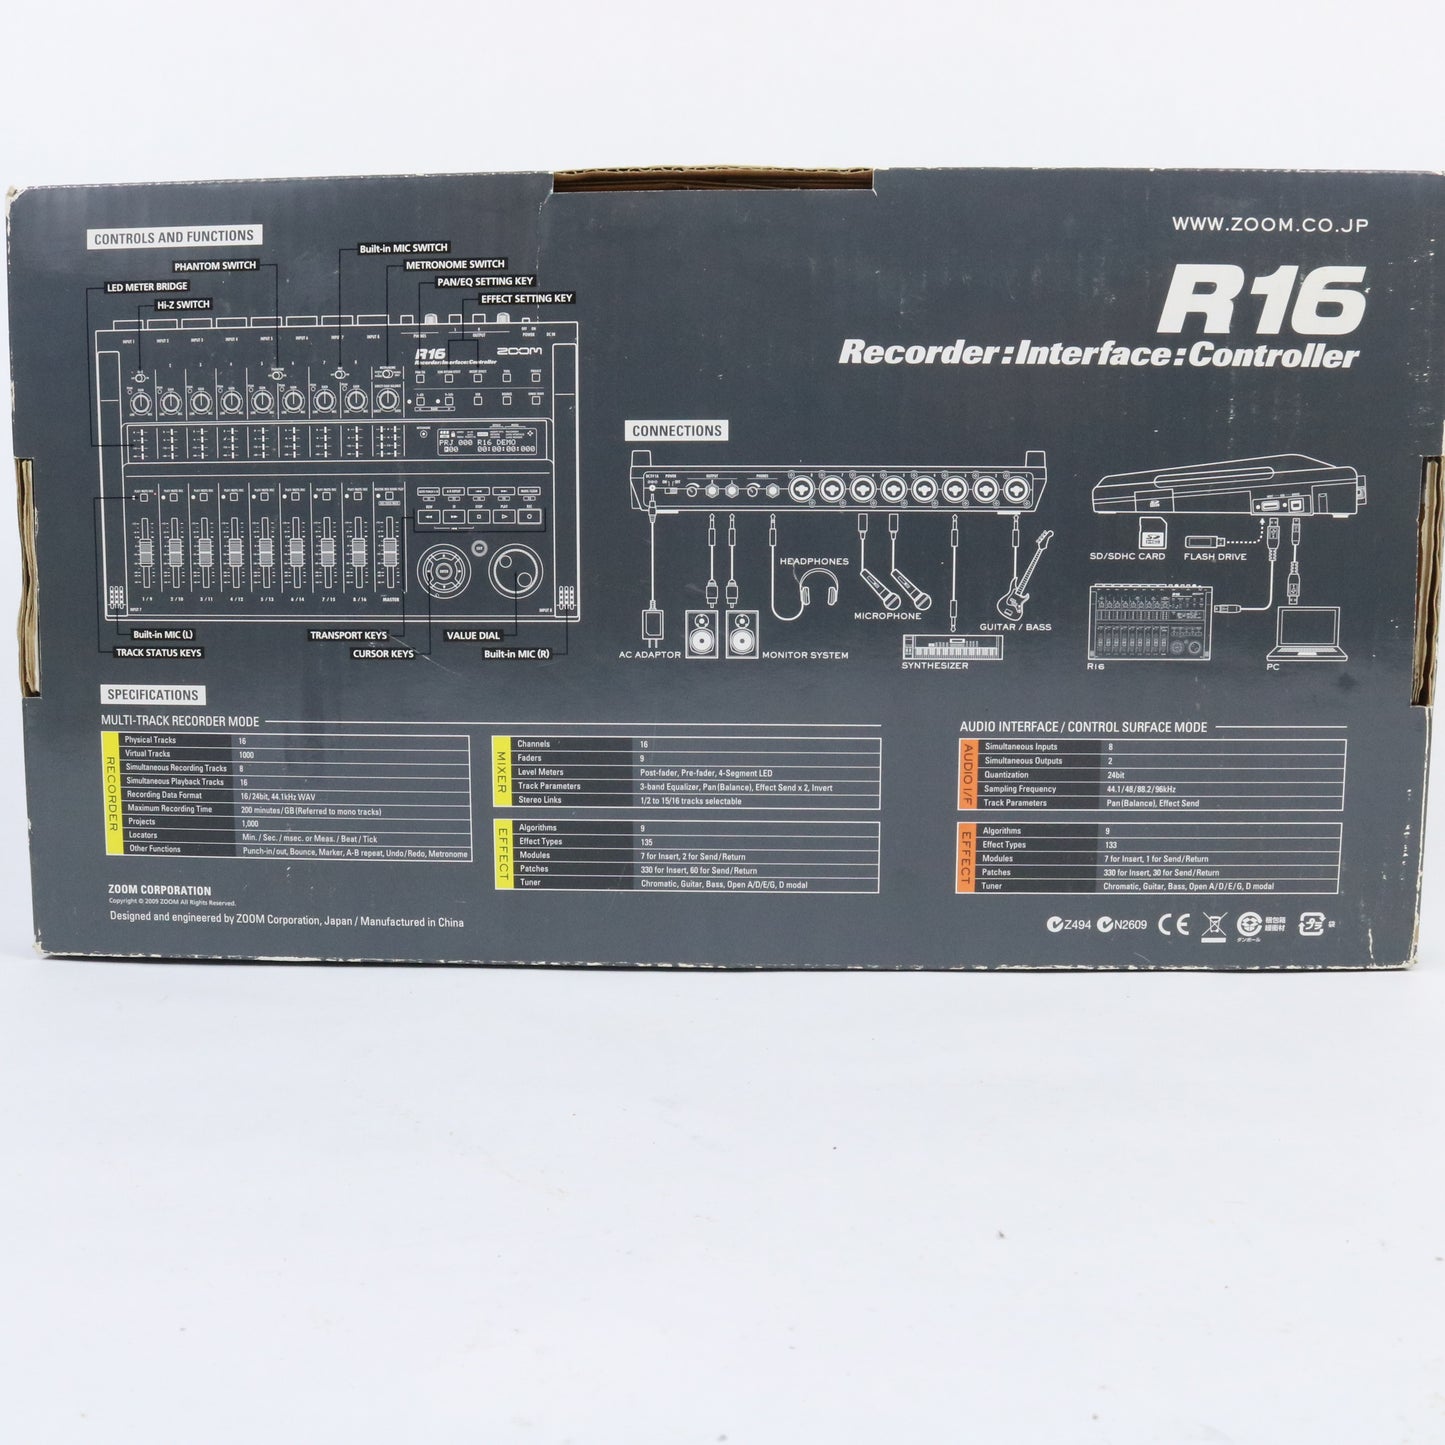 R16 Recorder: Interface: Controller